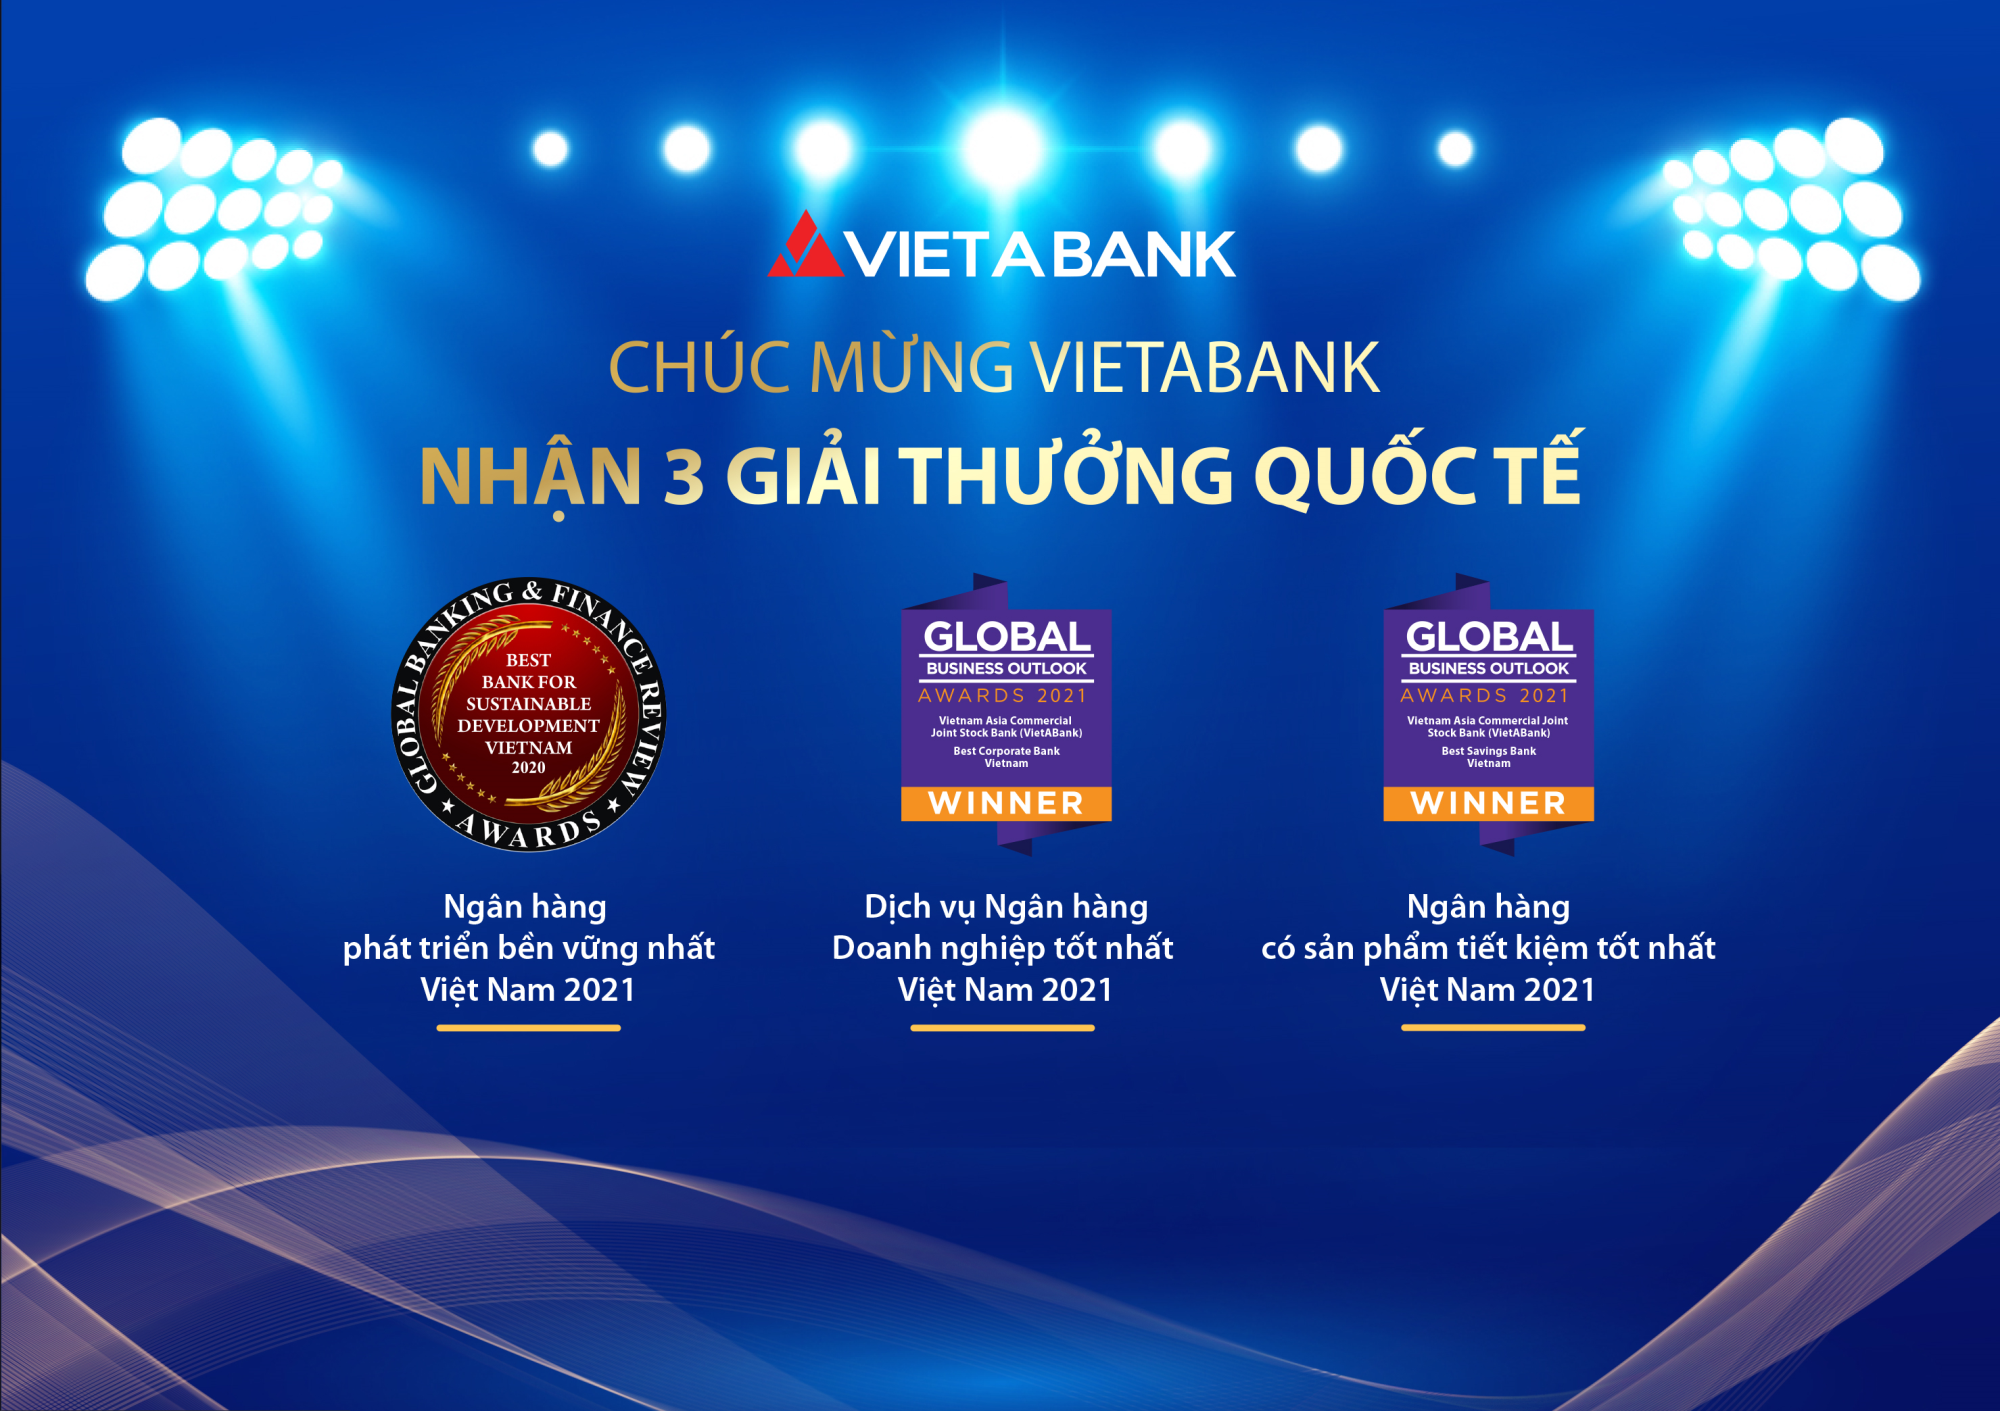 VietABank được các tổ chức quốc tế trao tặng 3 giải thưởng lớn